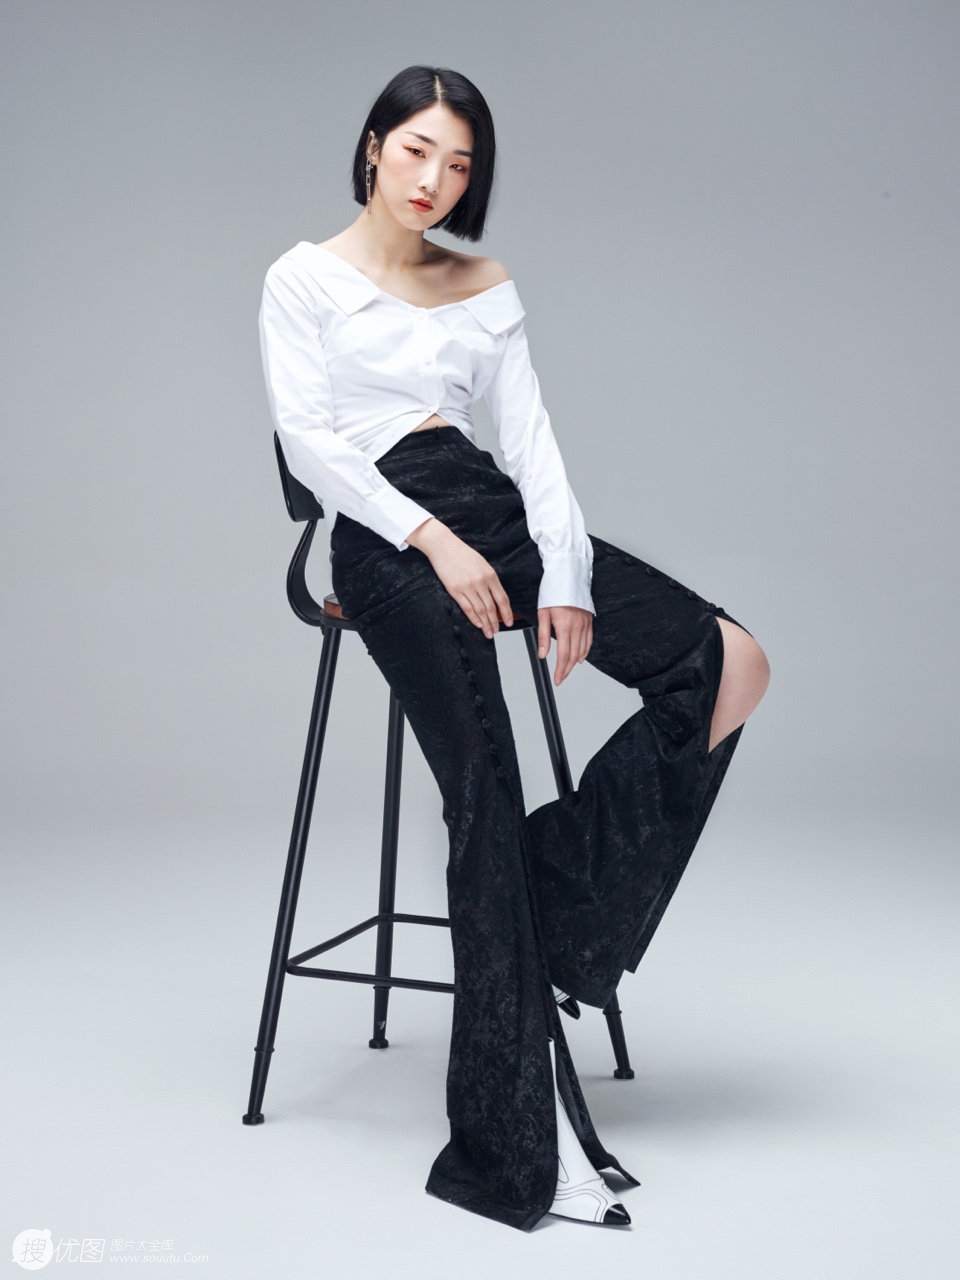 单眼皮小眼美女歌手Yamy酷美性感白衣黑裤写真图片第3张